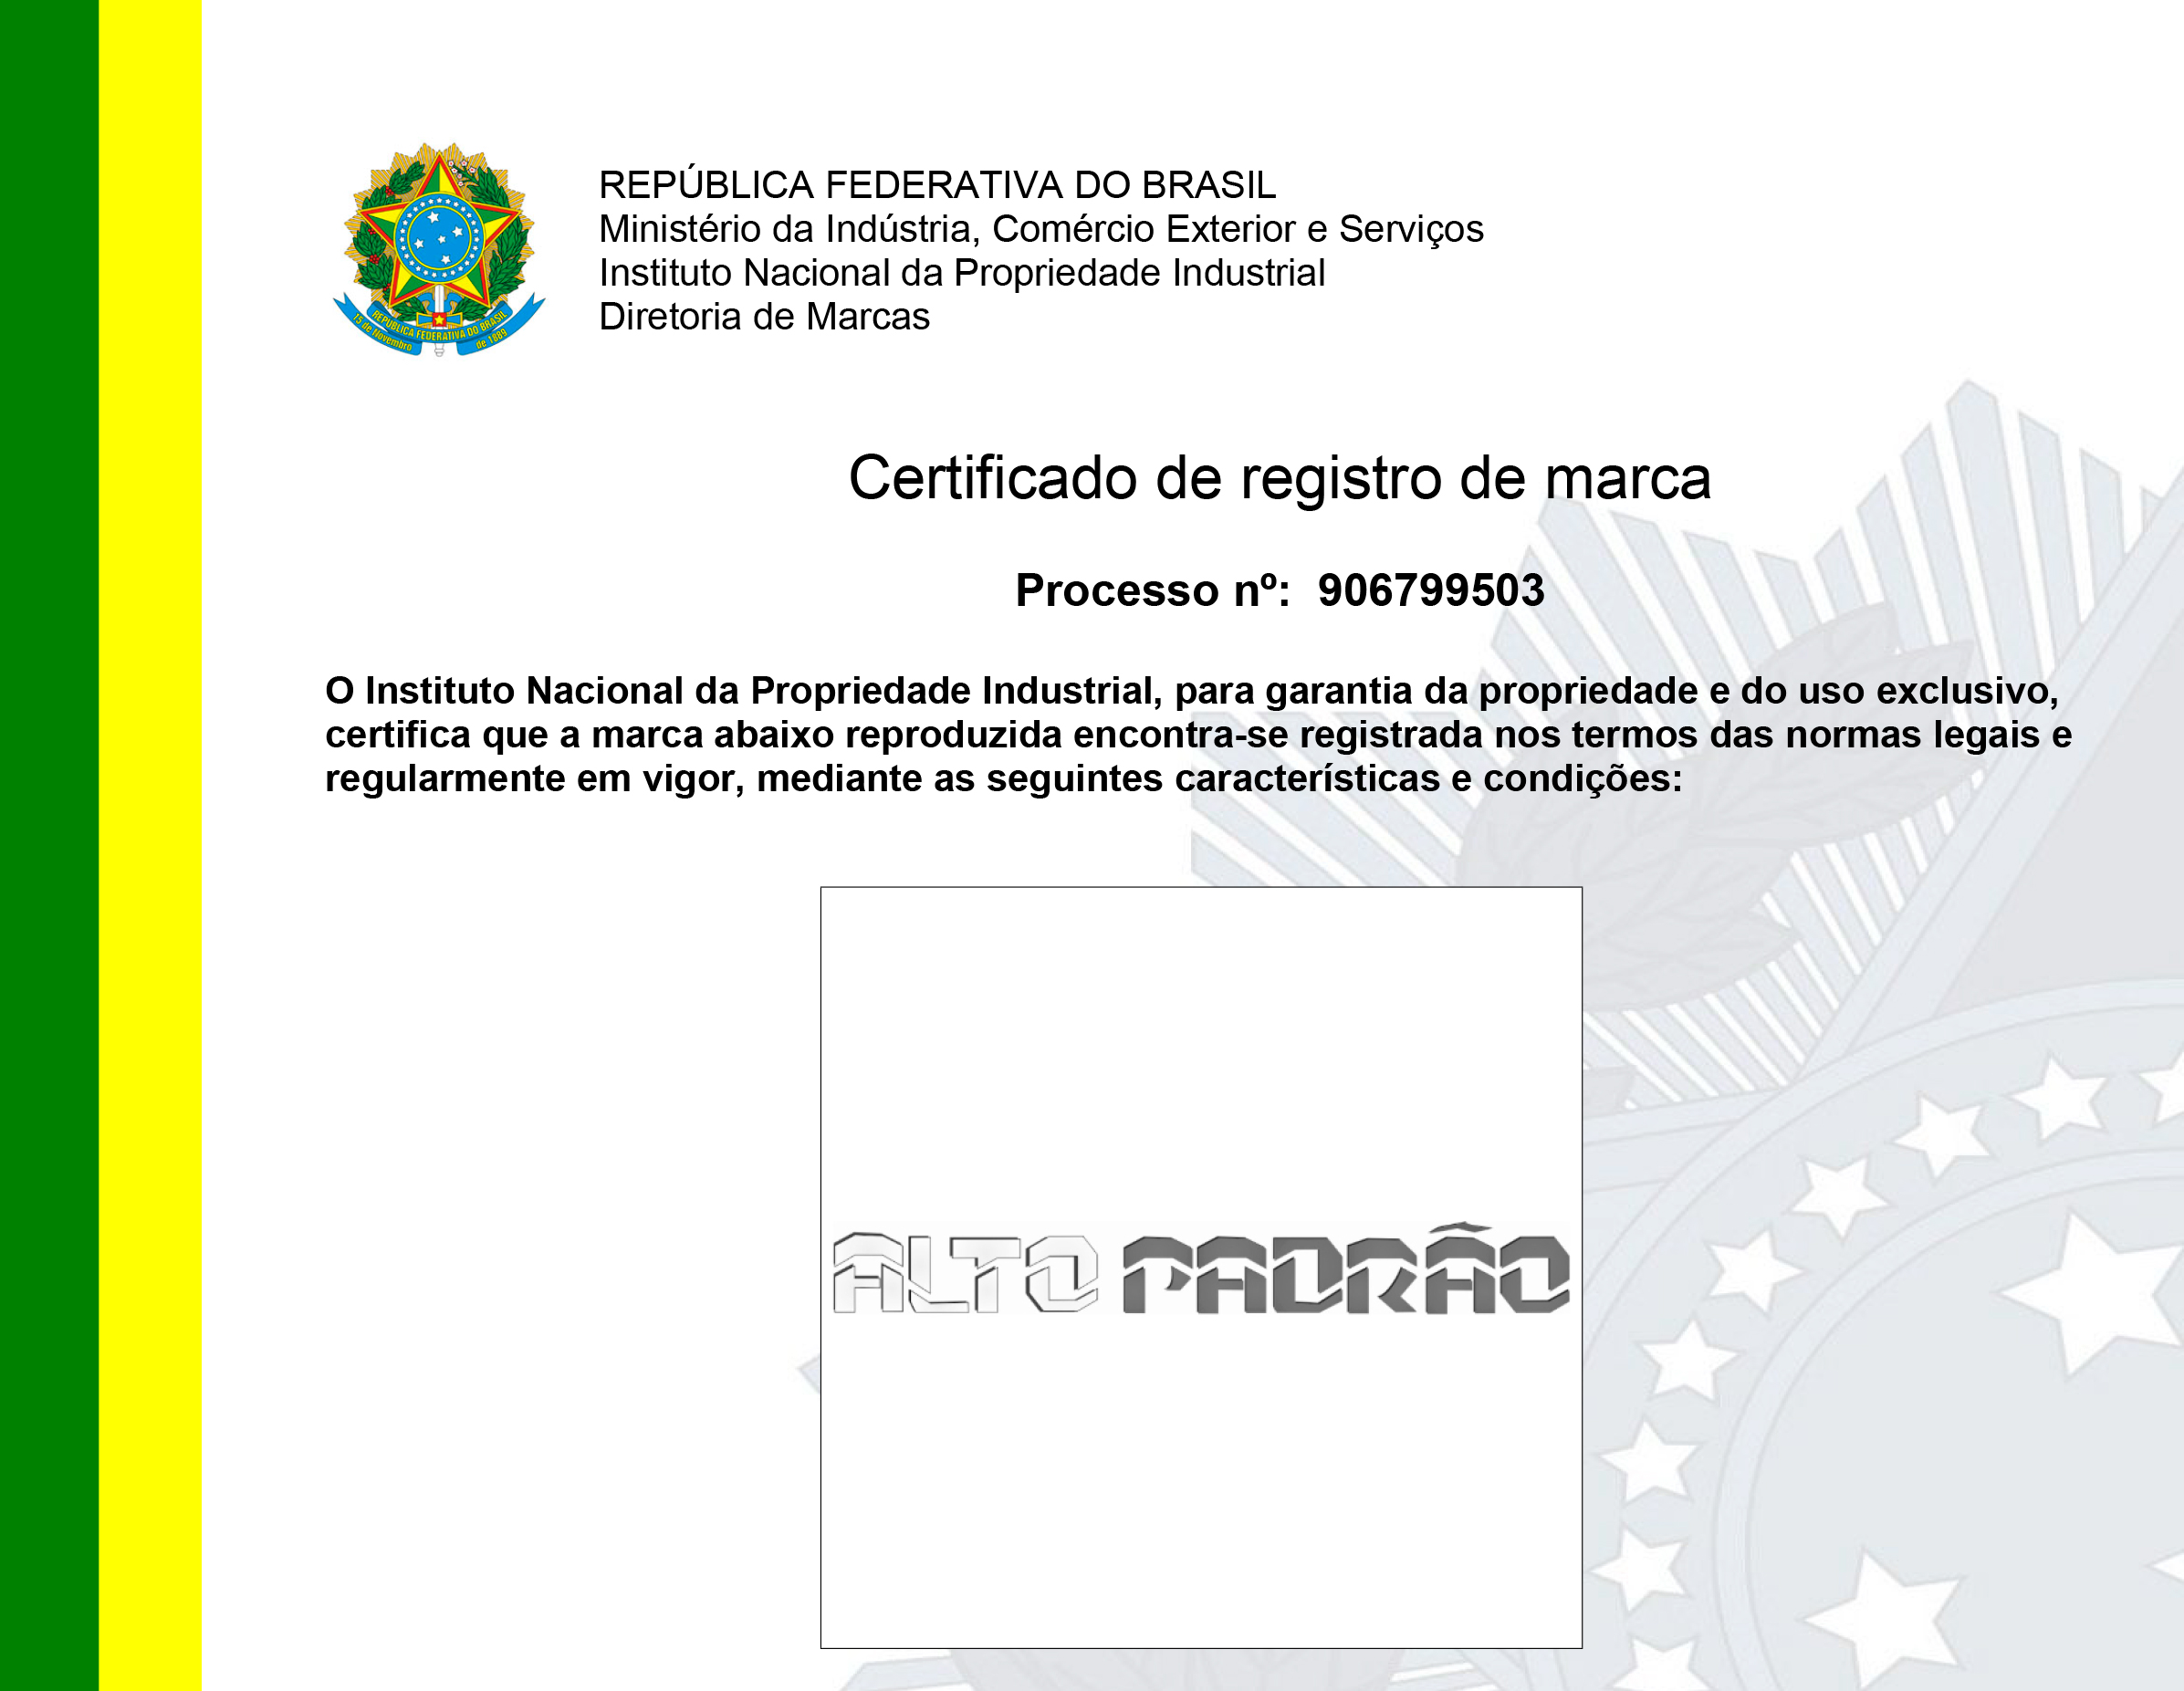 REGISTRO-906799503-MARCA-ALTO-PADRÃO-1